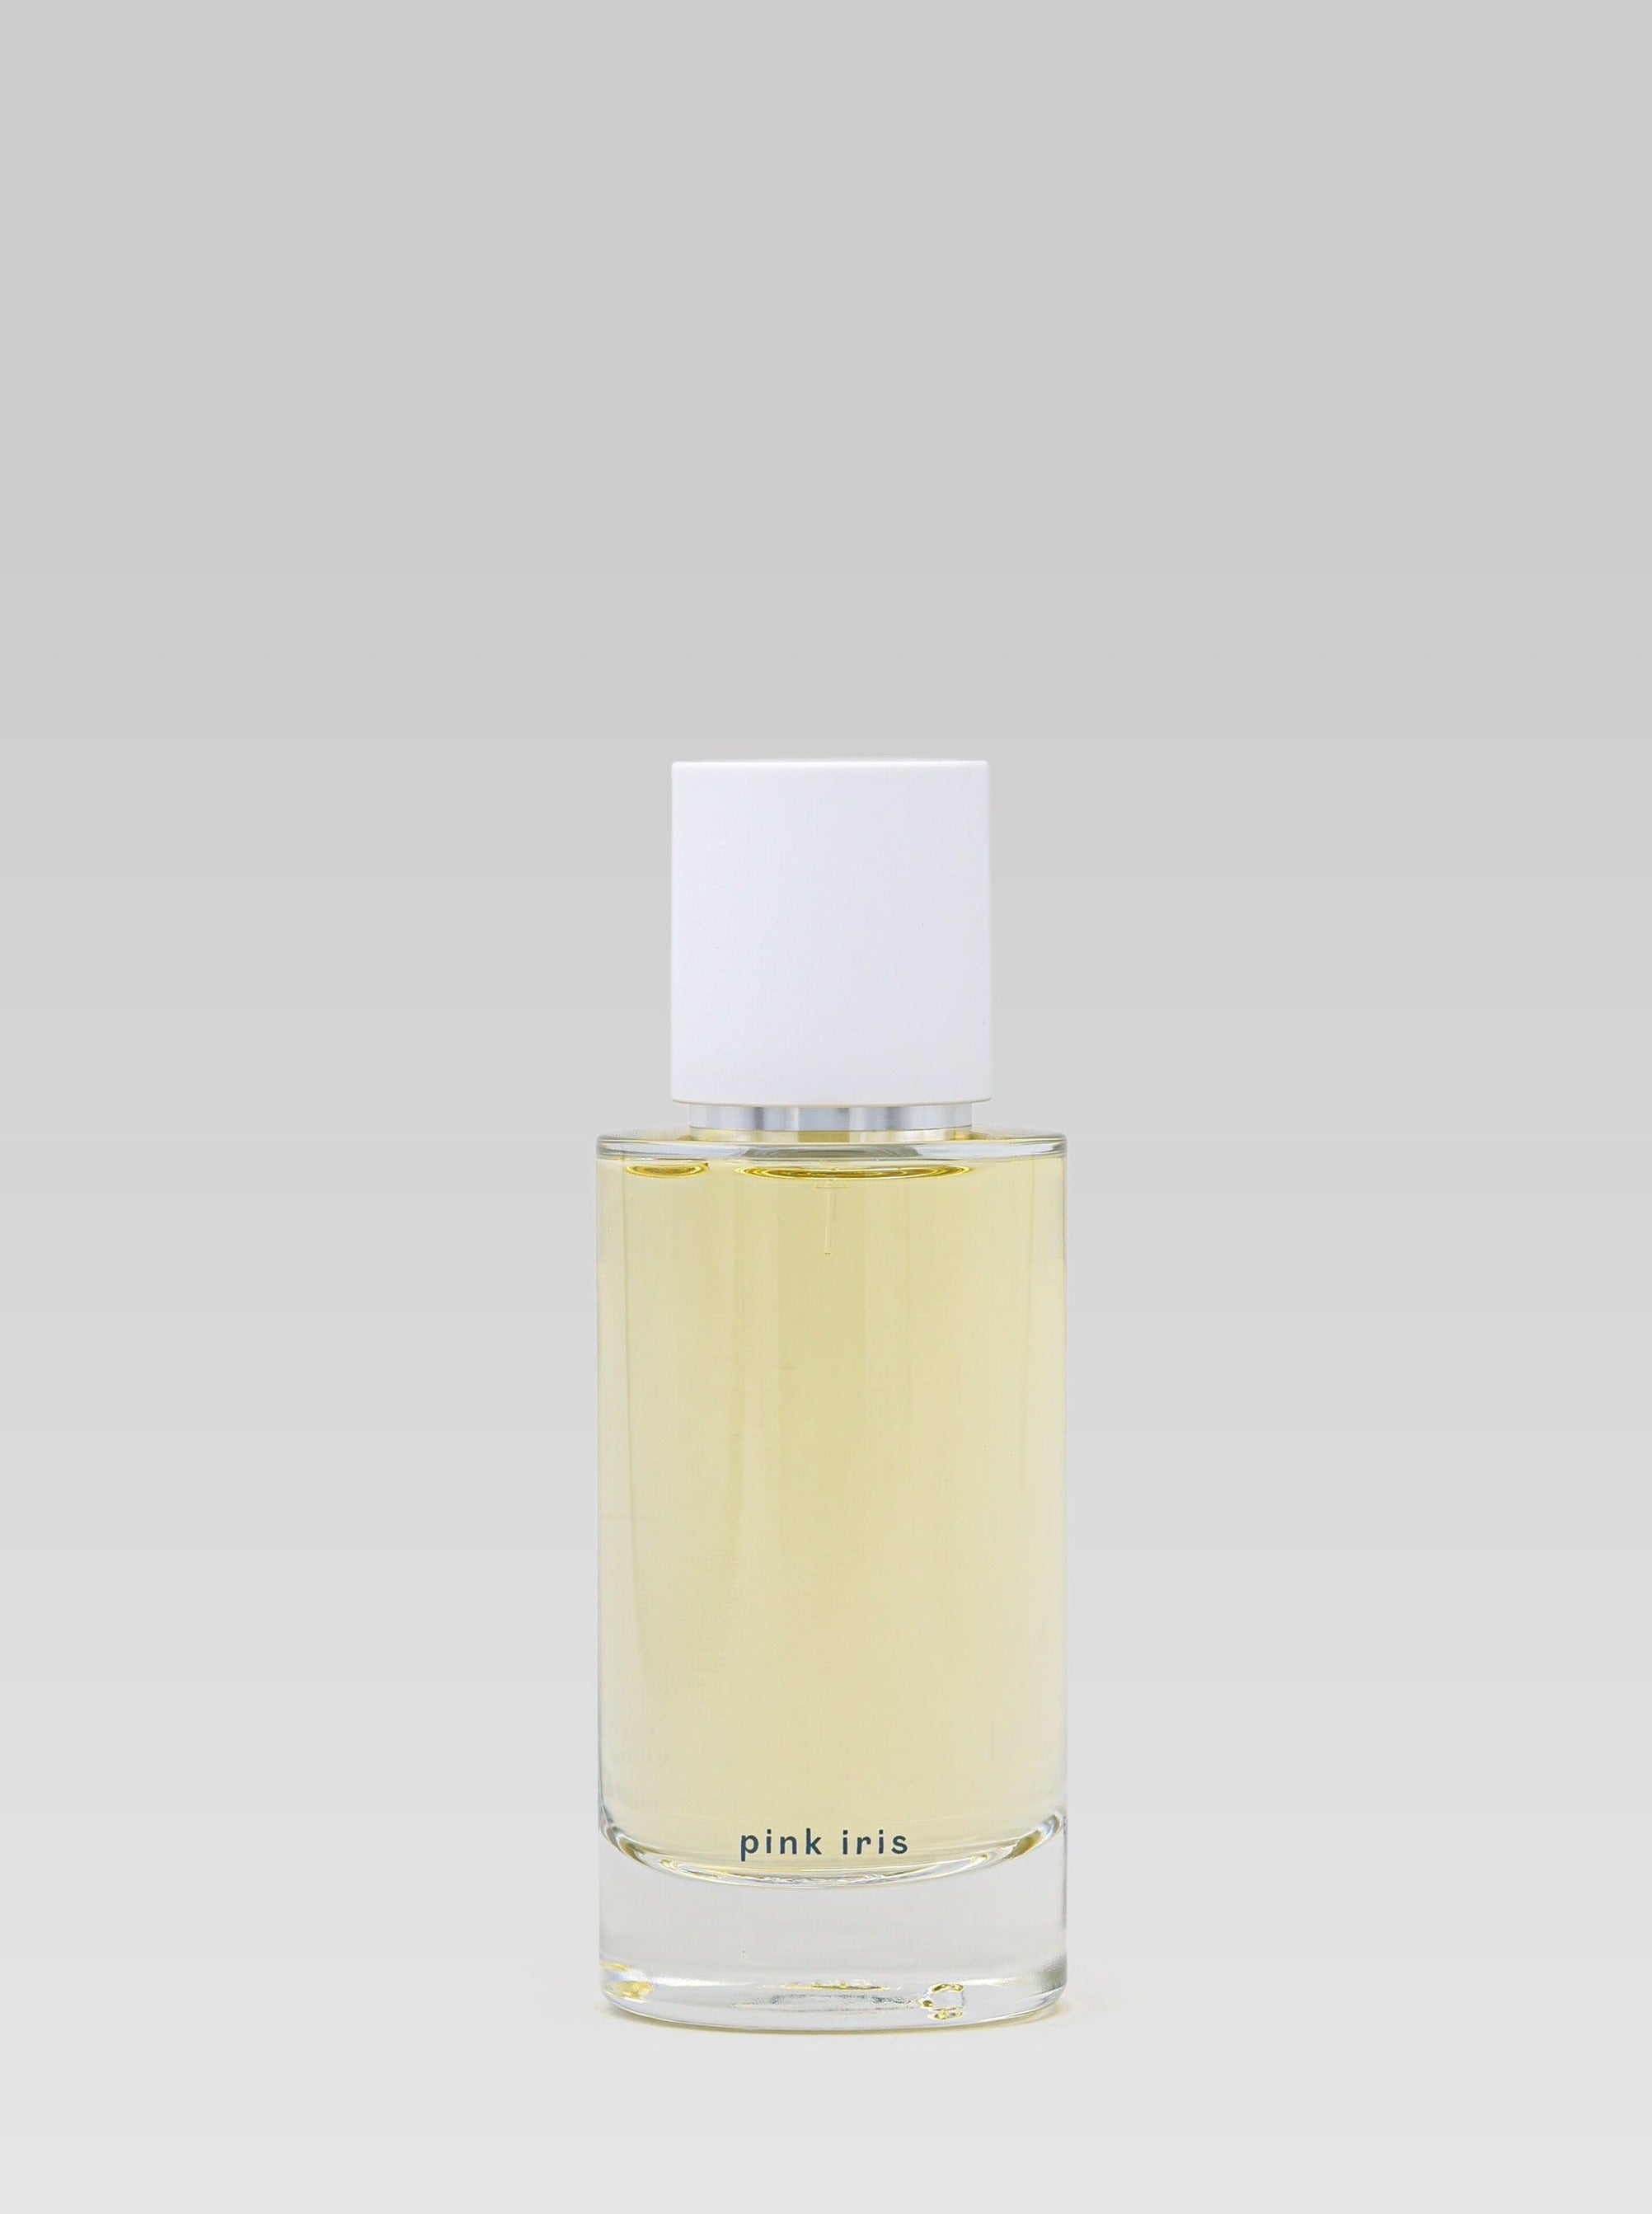 ABEL ODOR Parfum Pink Iris 50 ml product shot